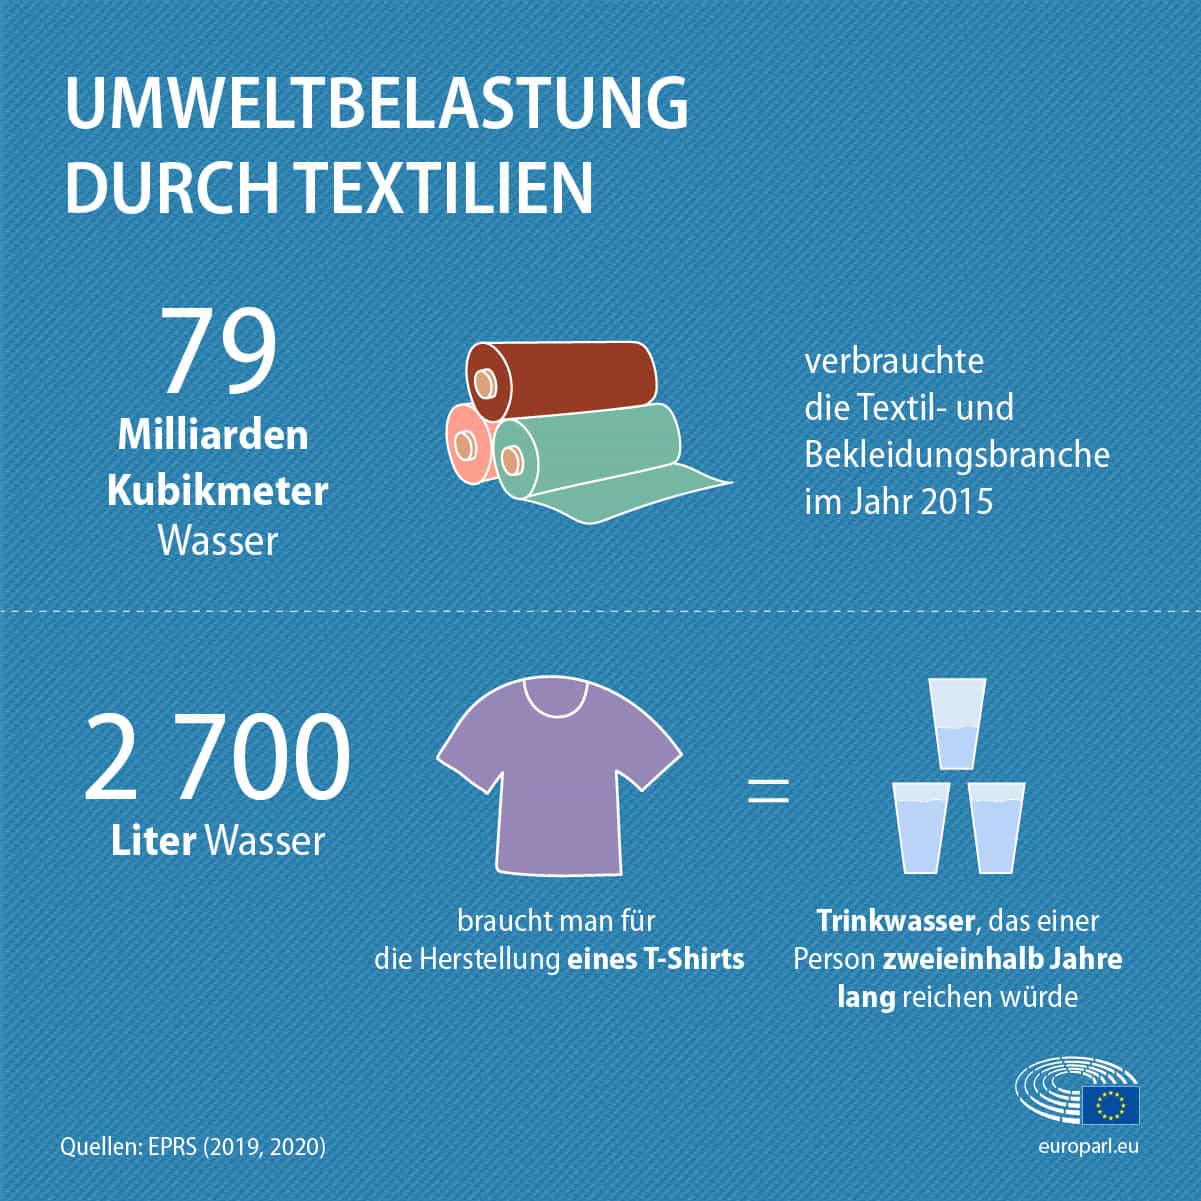 Bei der Herstellung von Textilien wird viel Wasser verbraucht 
